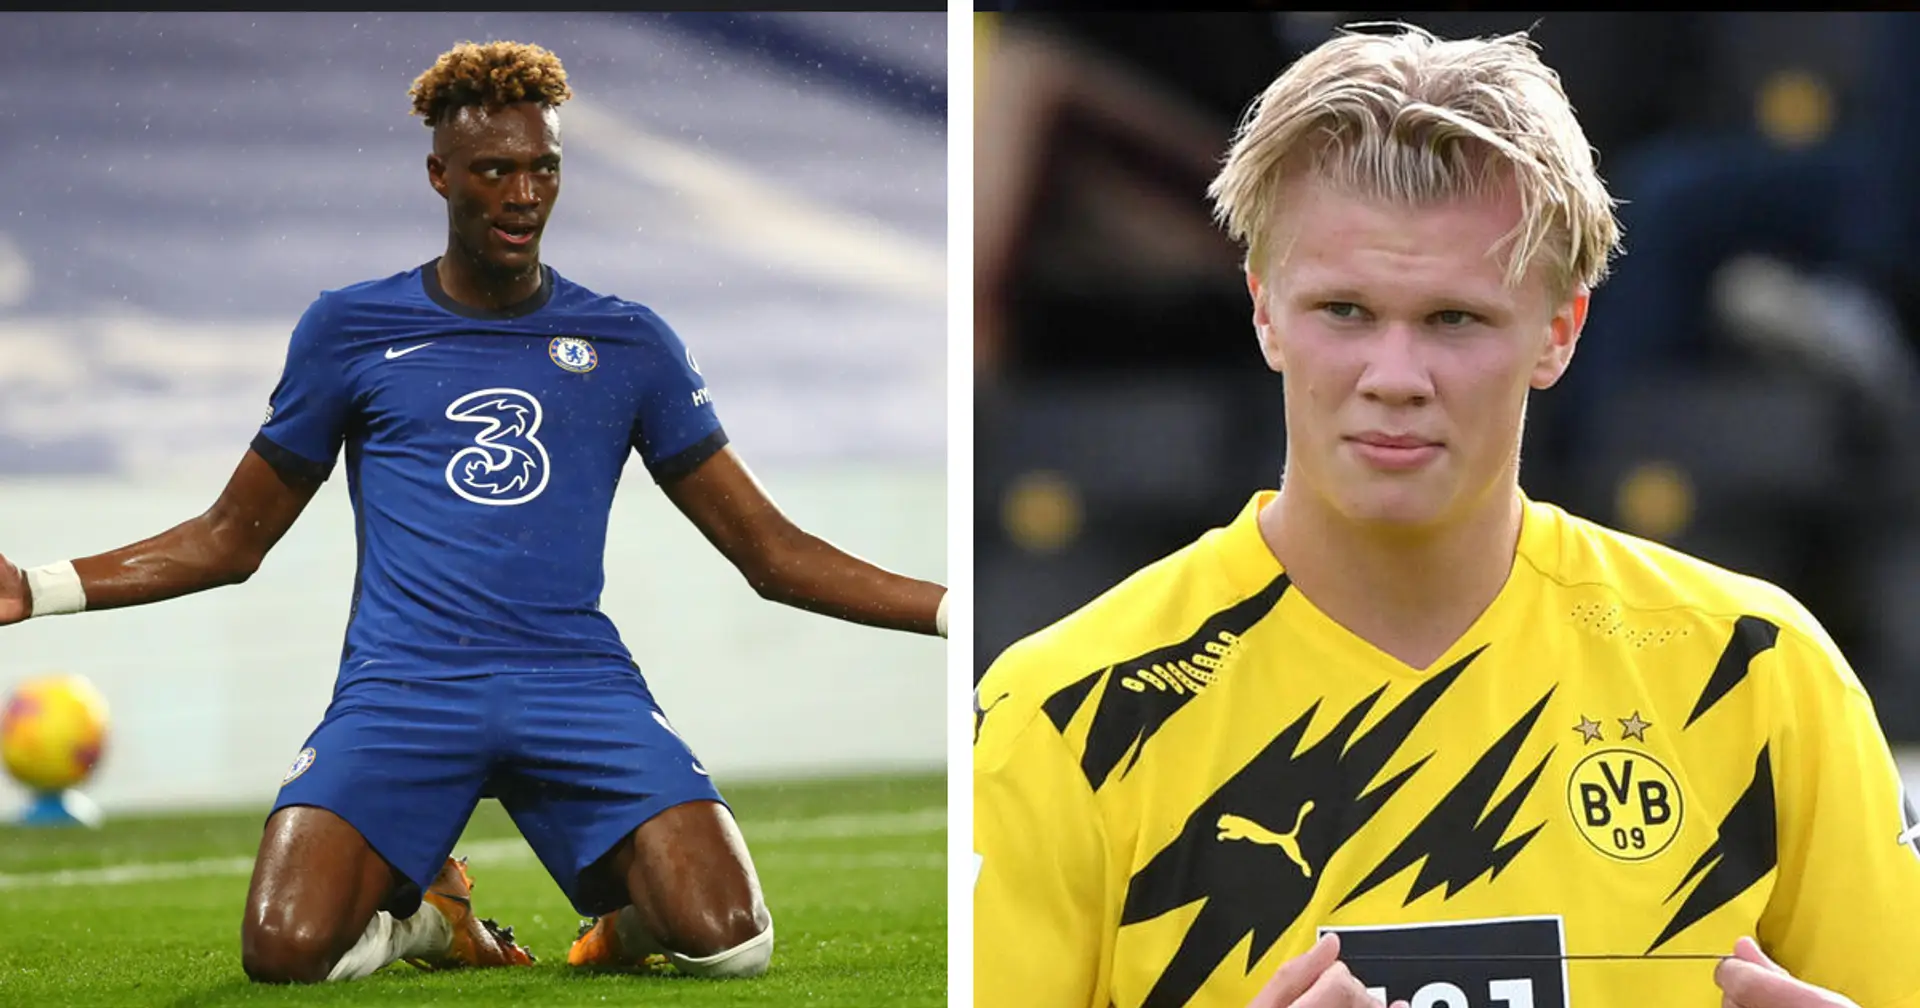 The Guardian: Chelsea schlug Dortmund einen Haaland-Abraham-Tauschdeal vor, BVB lehnte ab